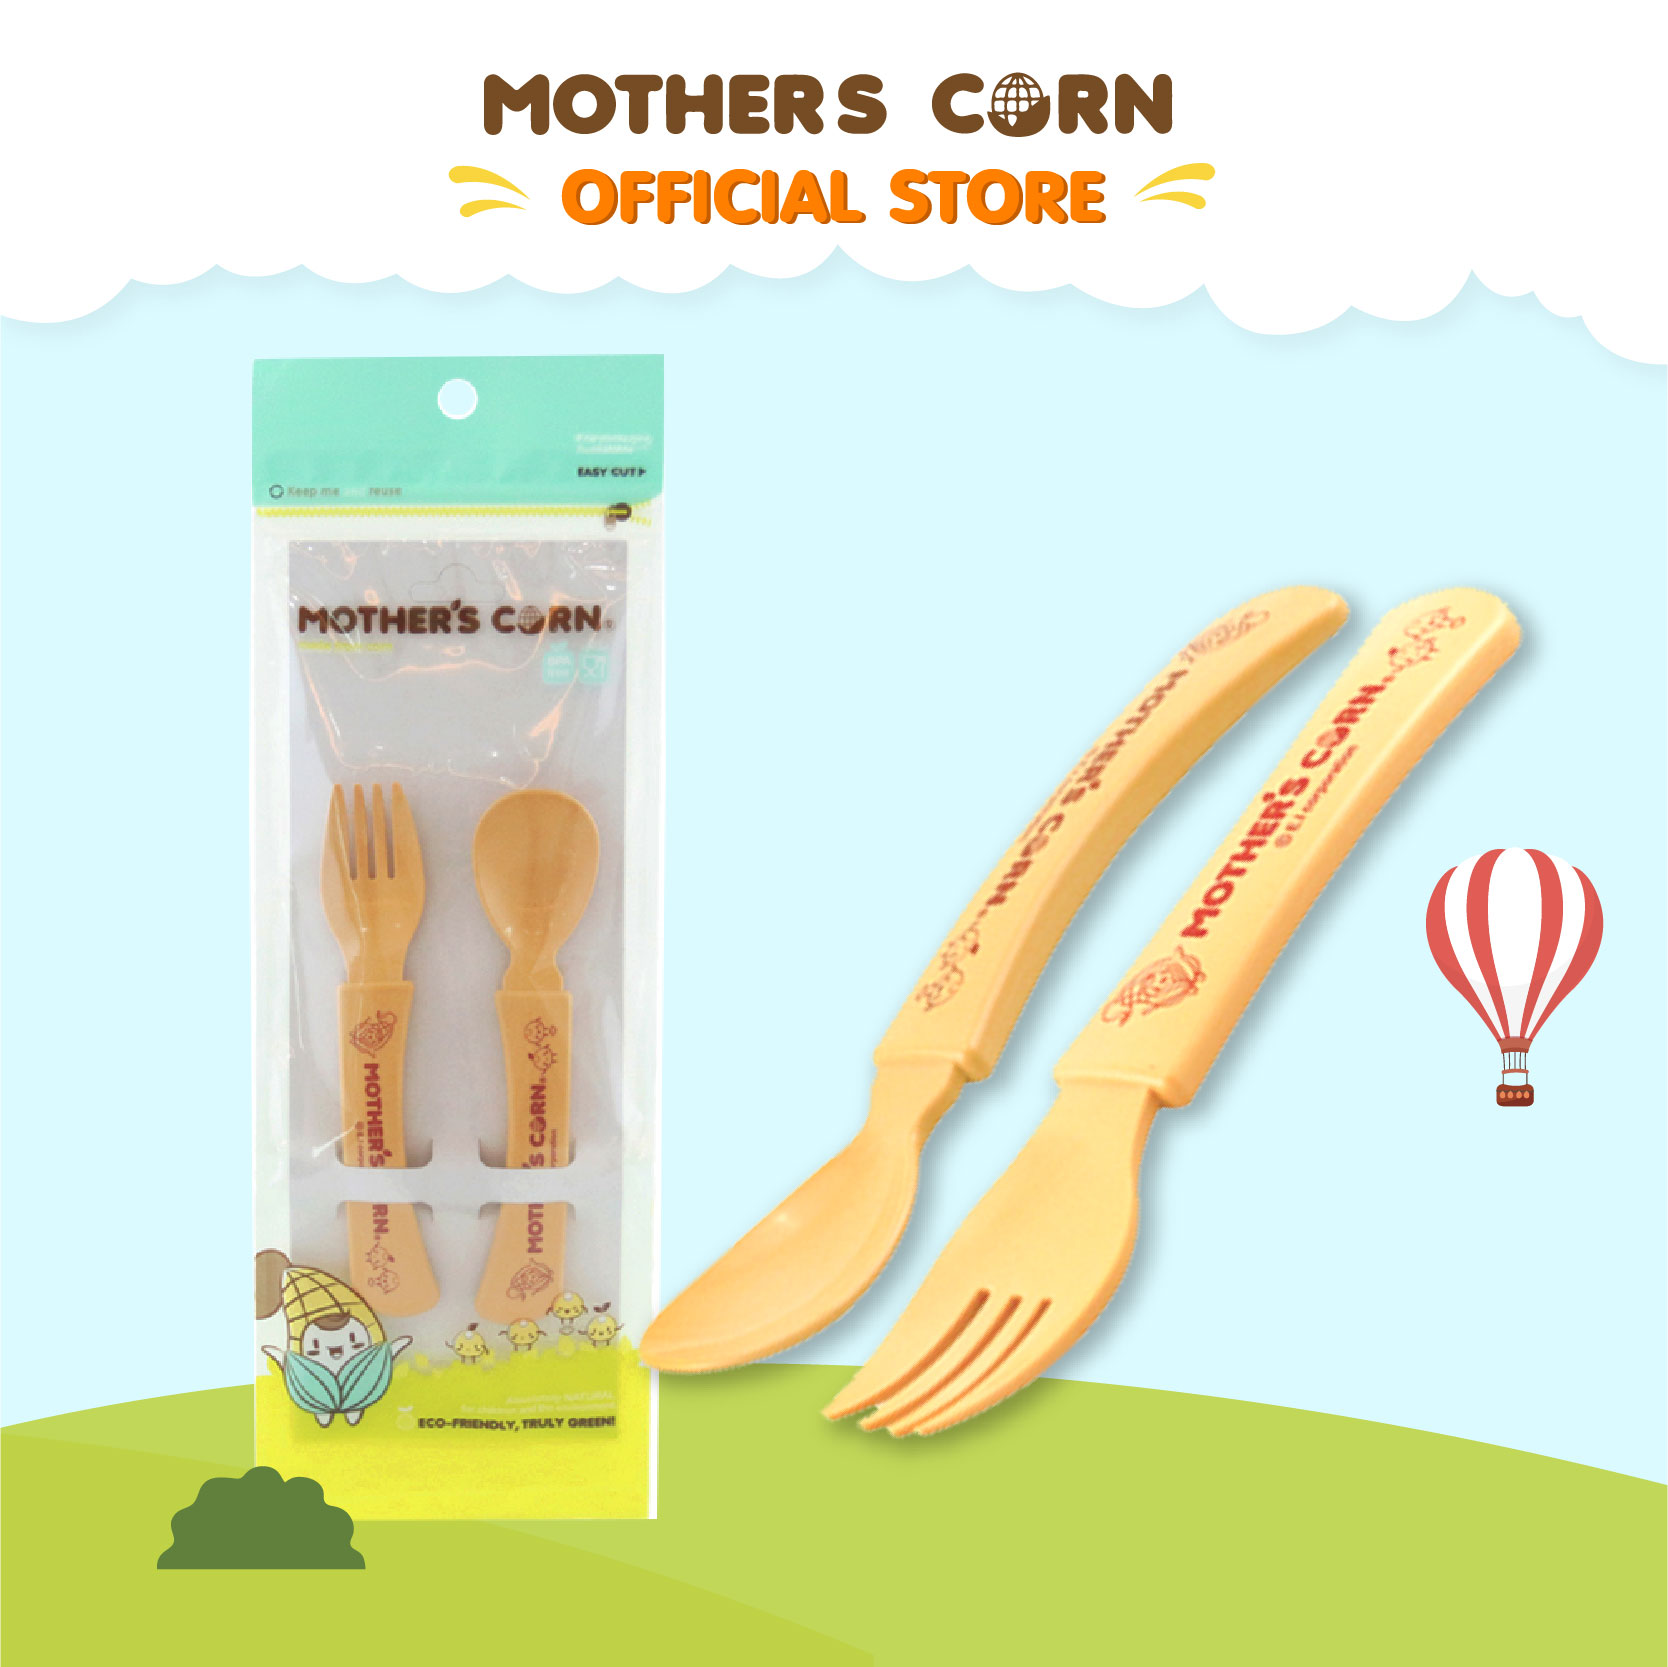 Mother's Corn Junior Spoon & Fork Set มาเธอร์คอน ชุดช้อนส้อมหัดทานเอง เสต็ป 4